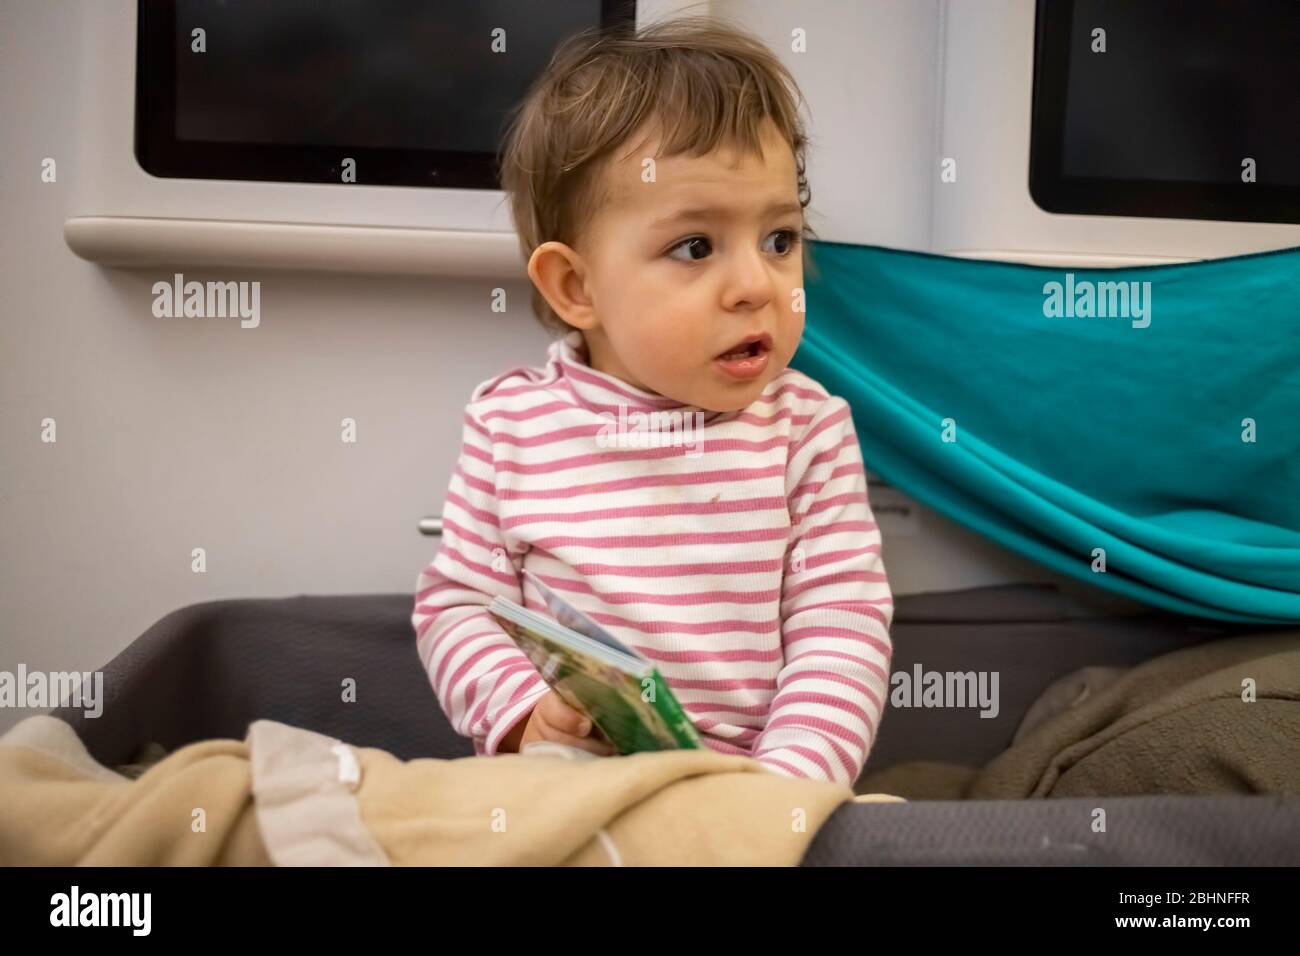 Kleines süßes Baby wachte in der Babykassette eines Flugzeugs auf, das schläfrig saß und sich umsah, Nahaufnahme, weiche Fokussierung. Stockfoto